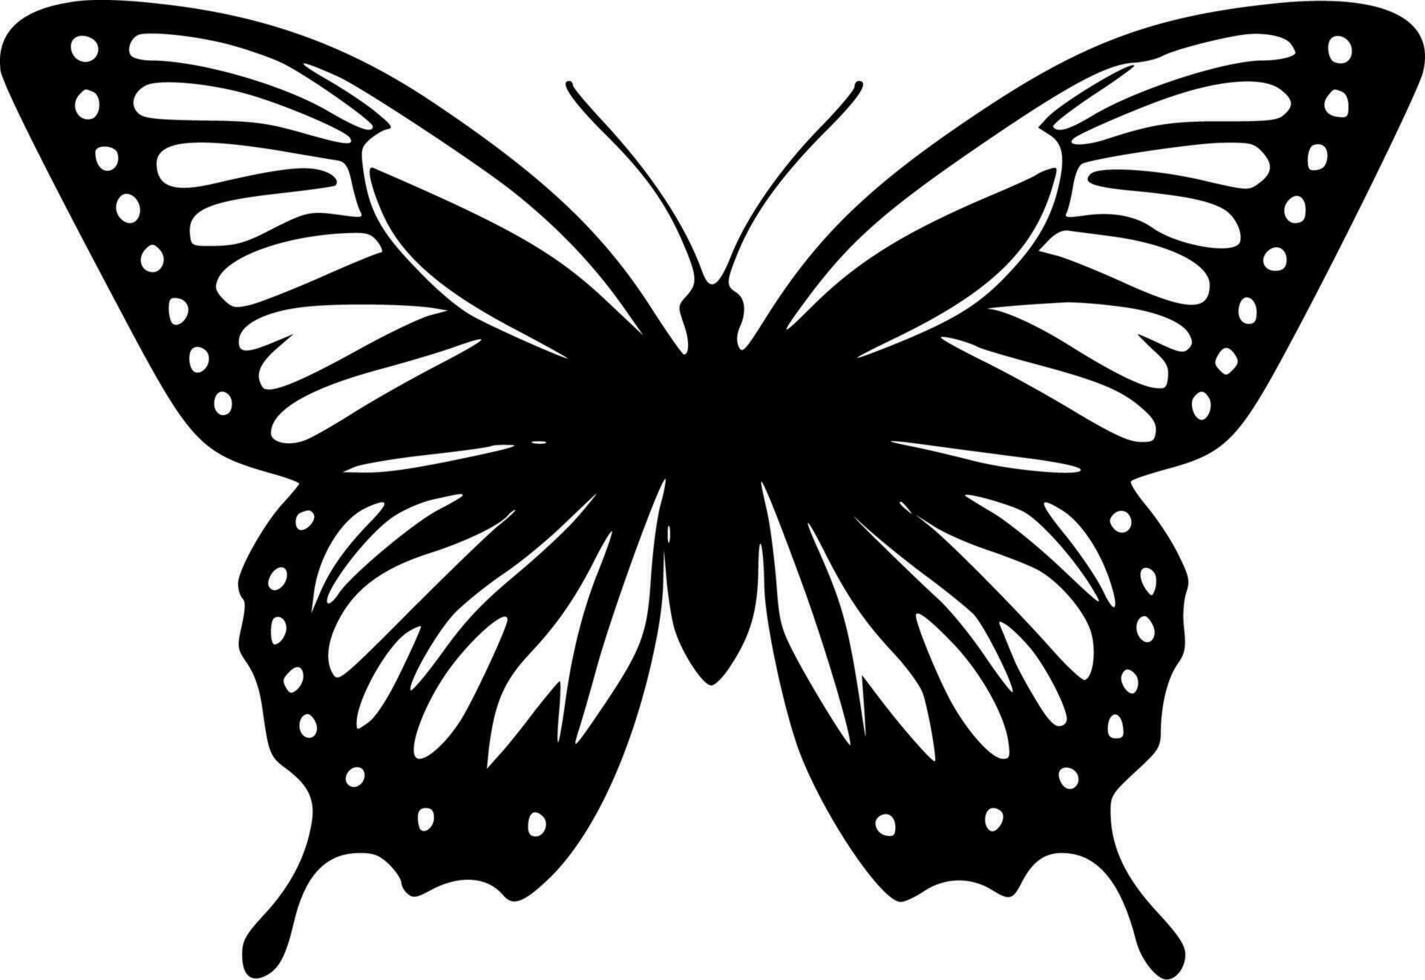 mariposa - minimalista y plano logo - vector ilustración